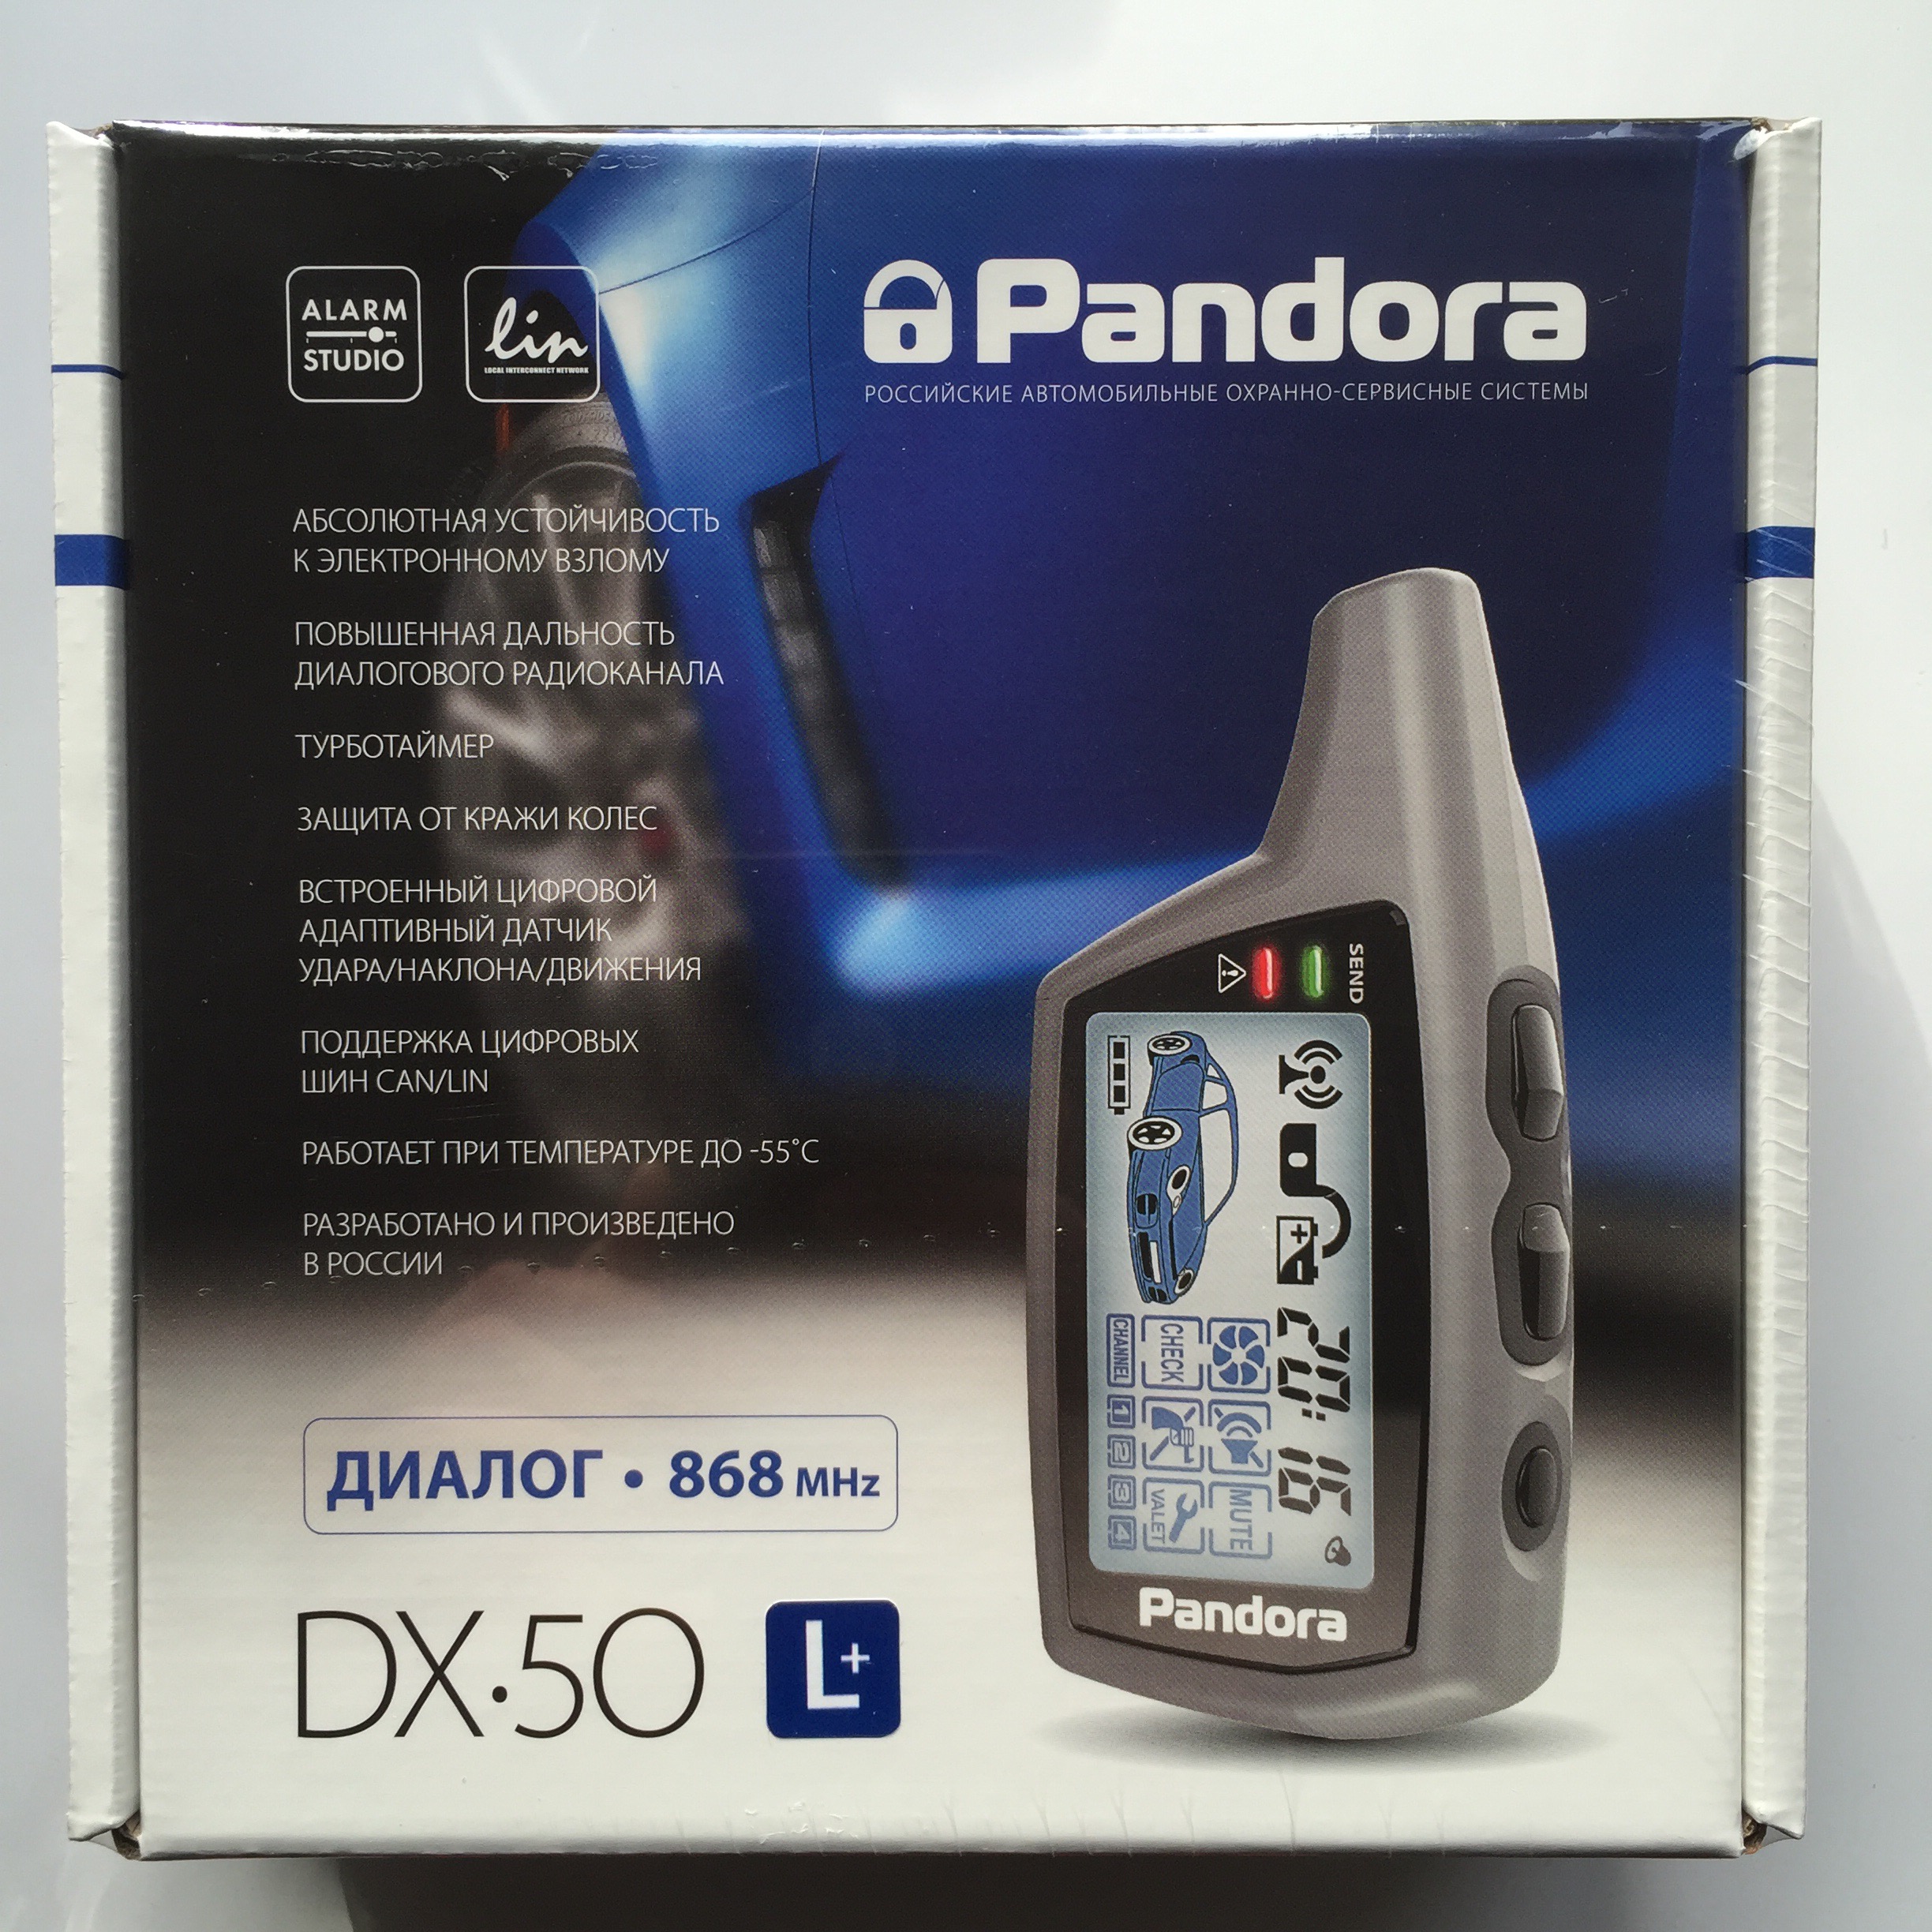 Pandora DX 50 L+ Krasnodar